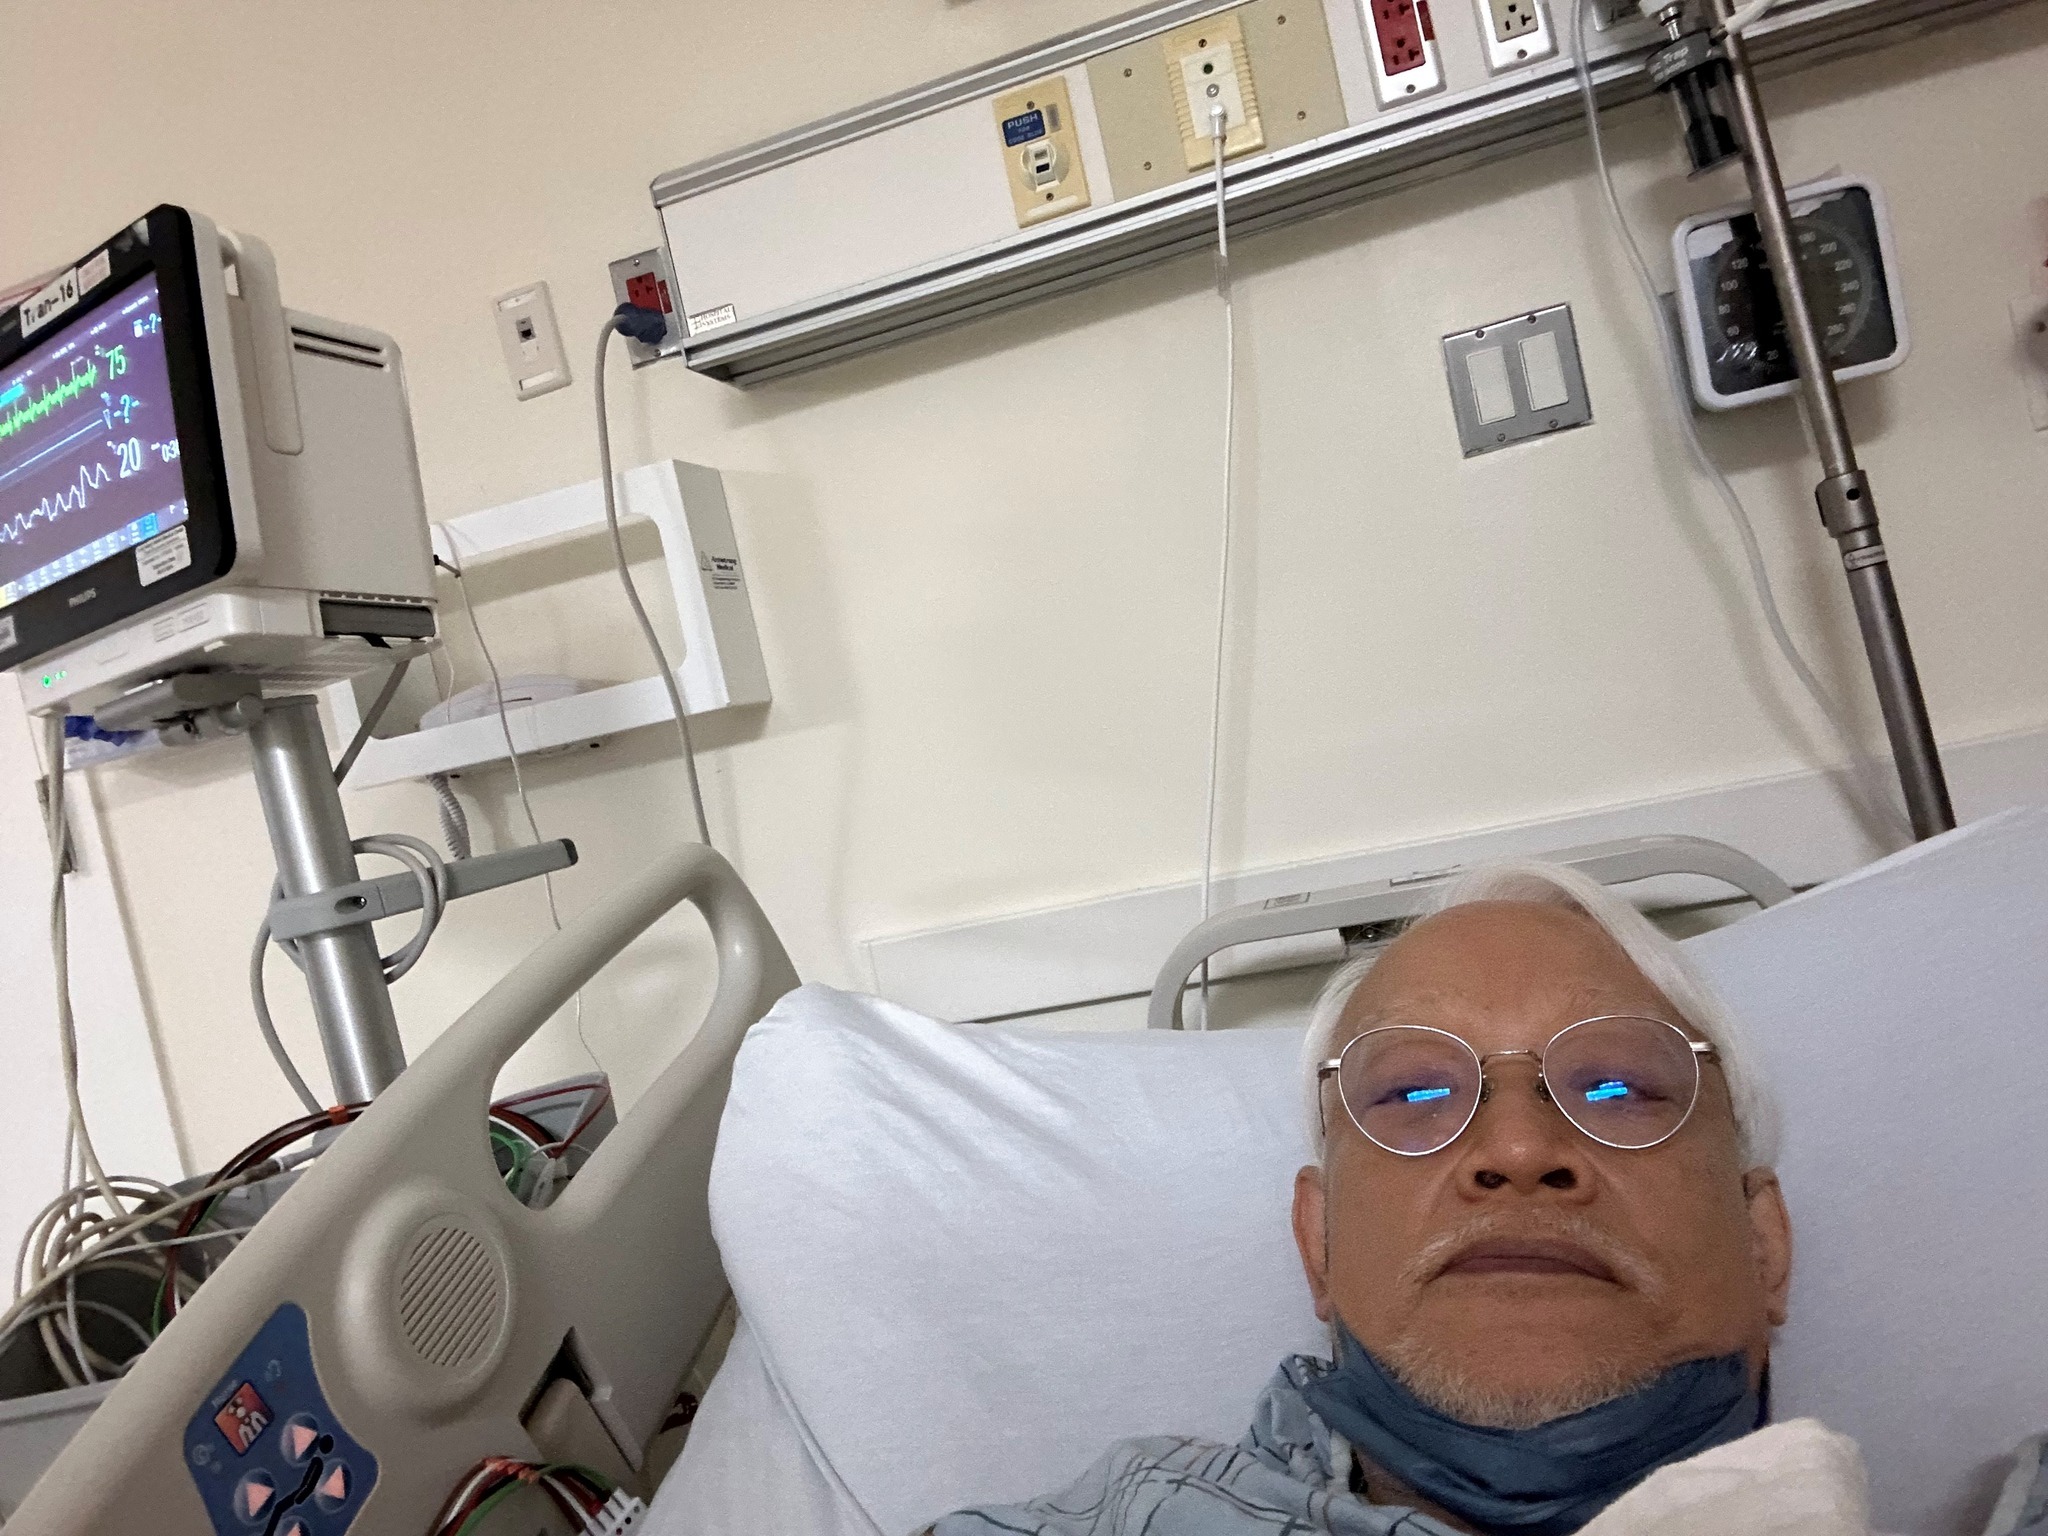 74歲劉墉突摔倒失去意識醒來滿地嘔吐物緊急送醫